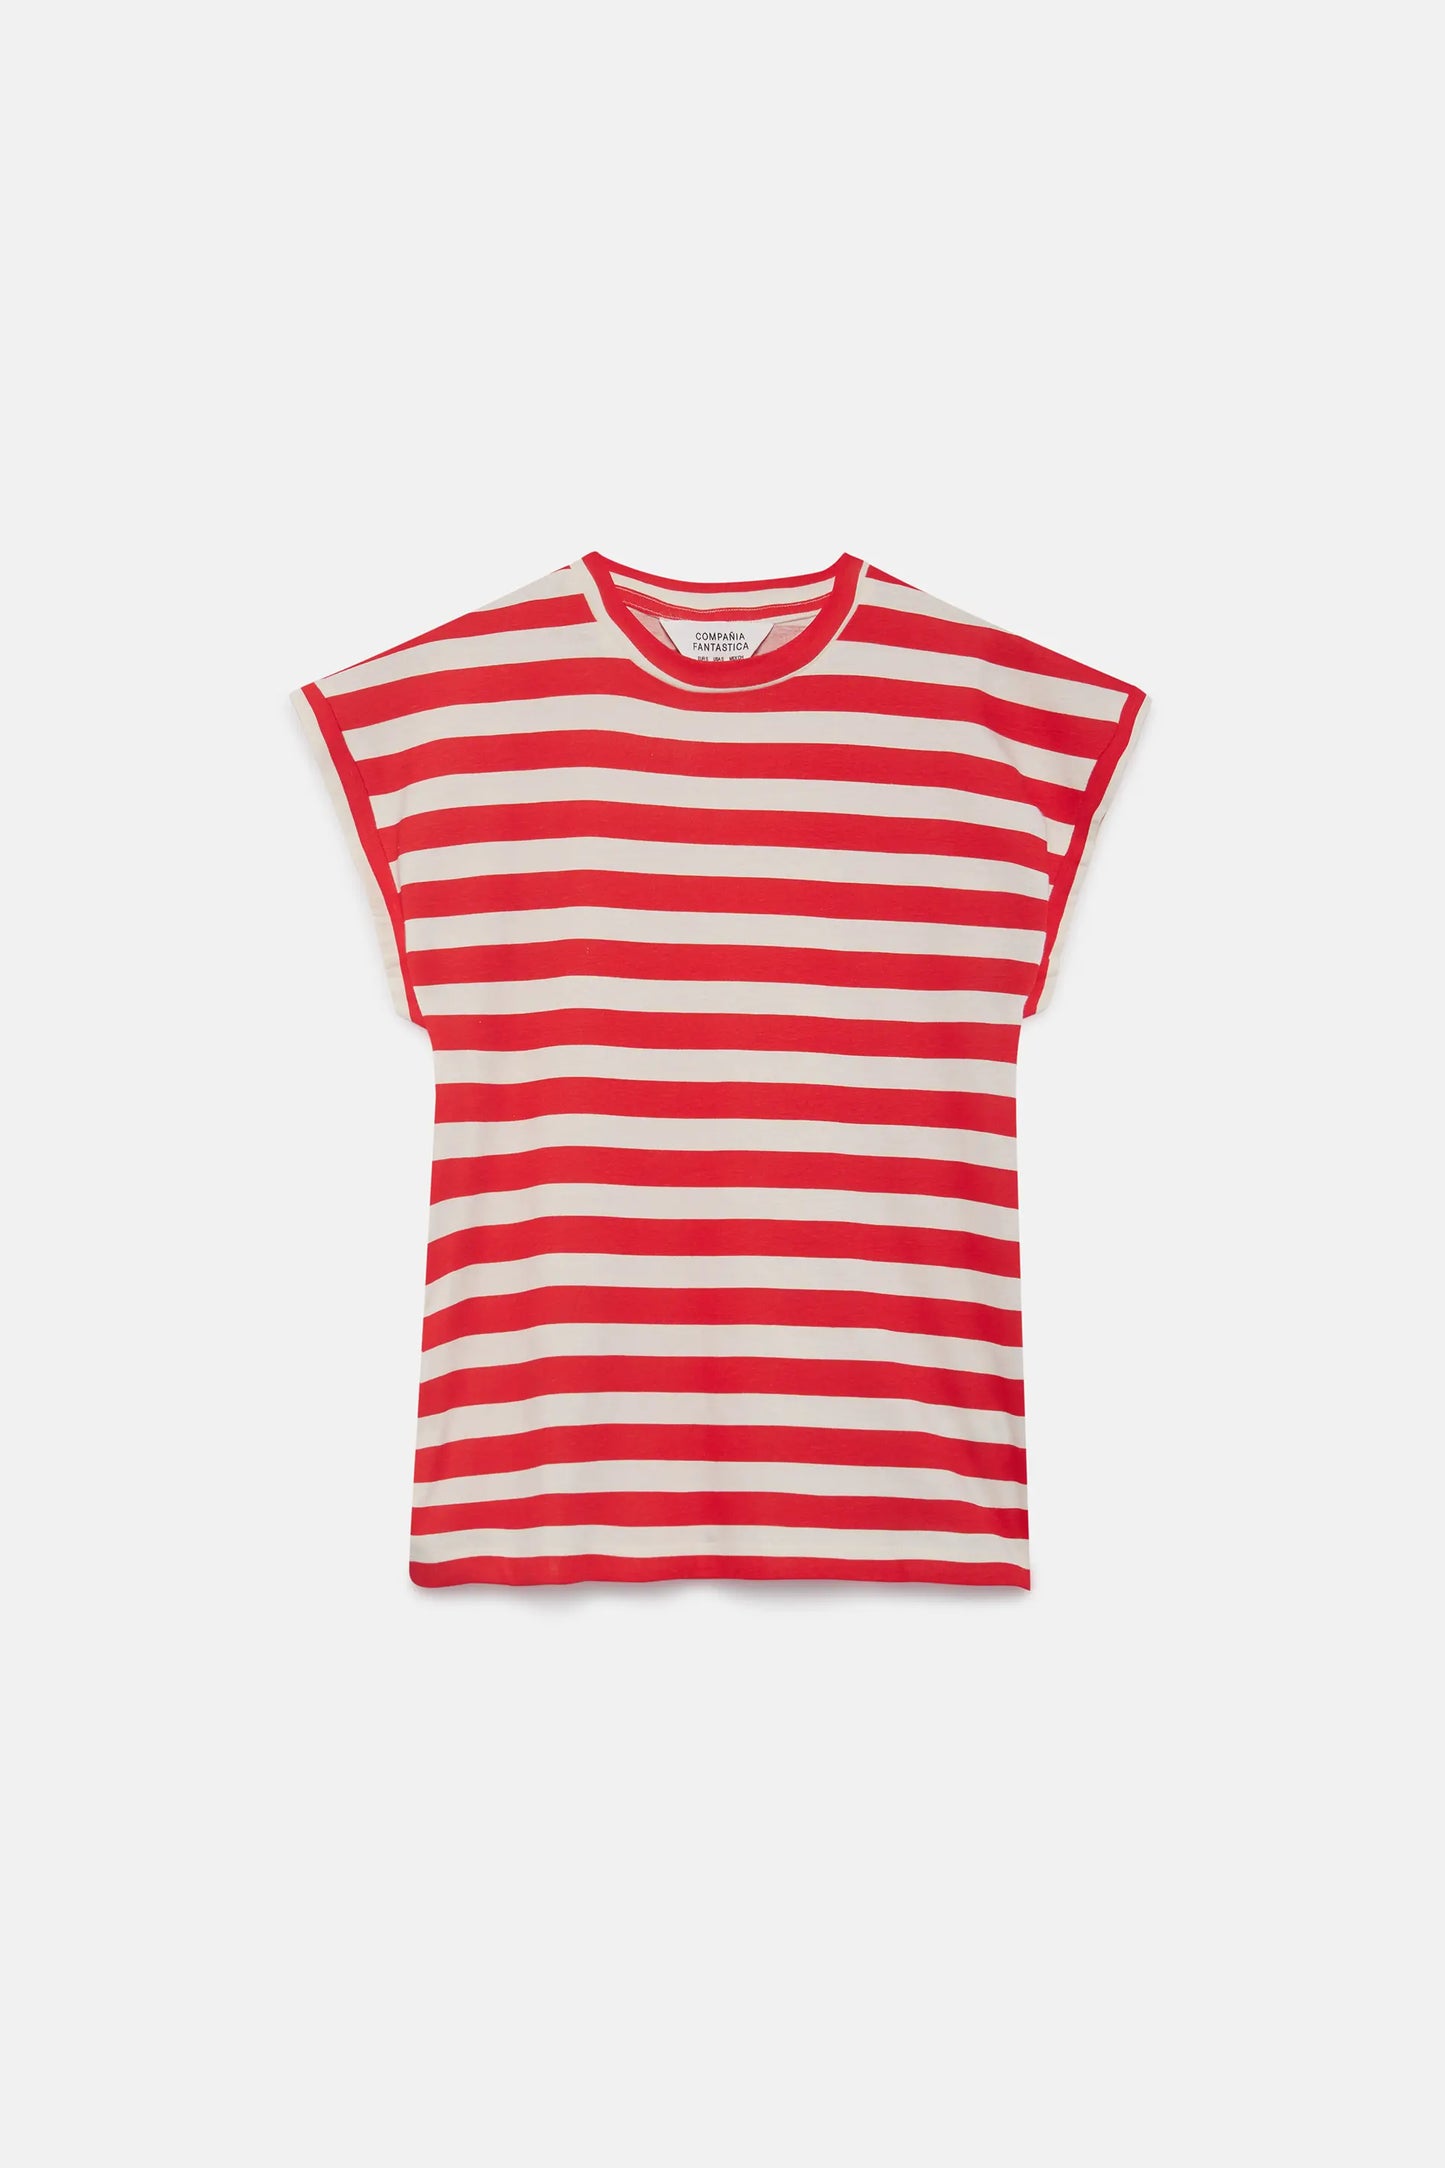 Camiseta manga corta rayas rojas